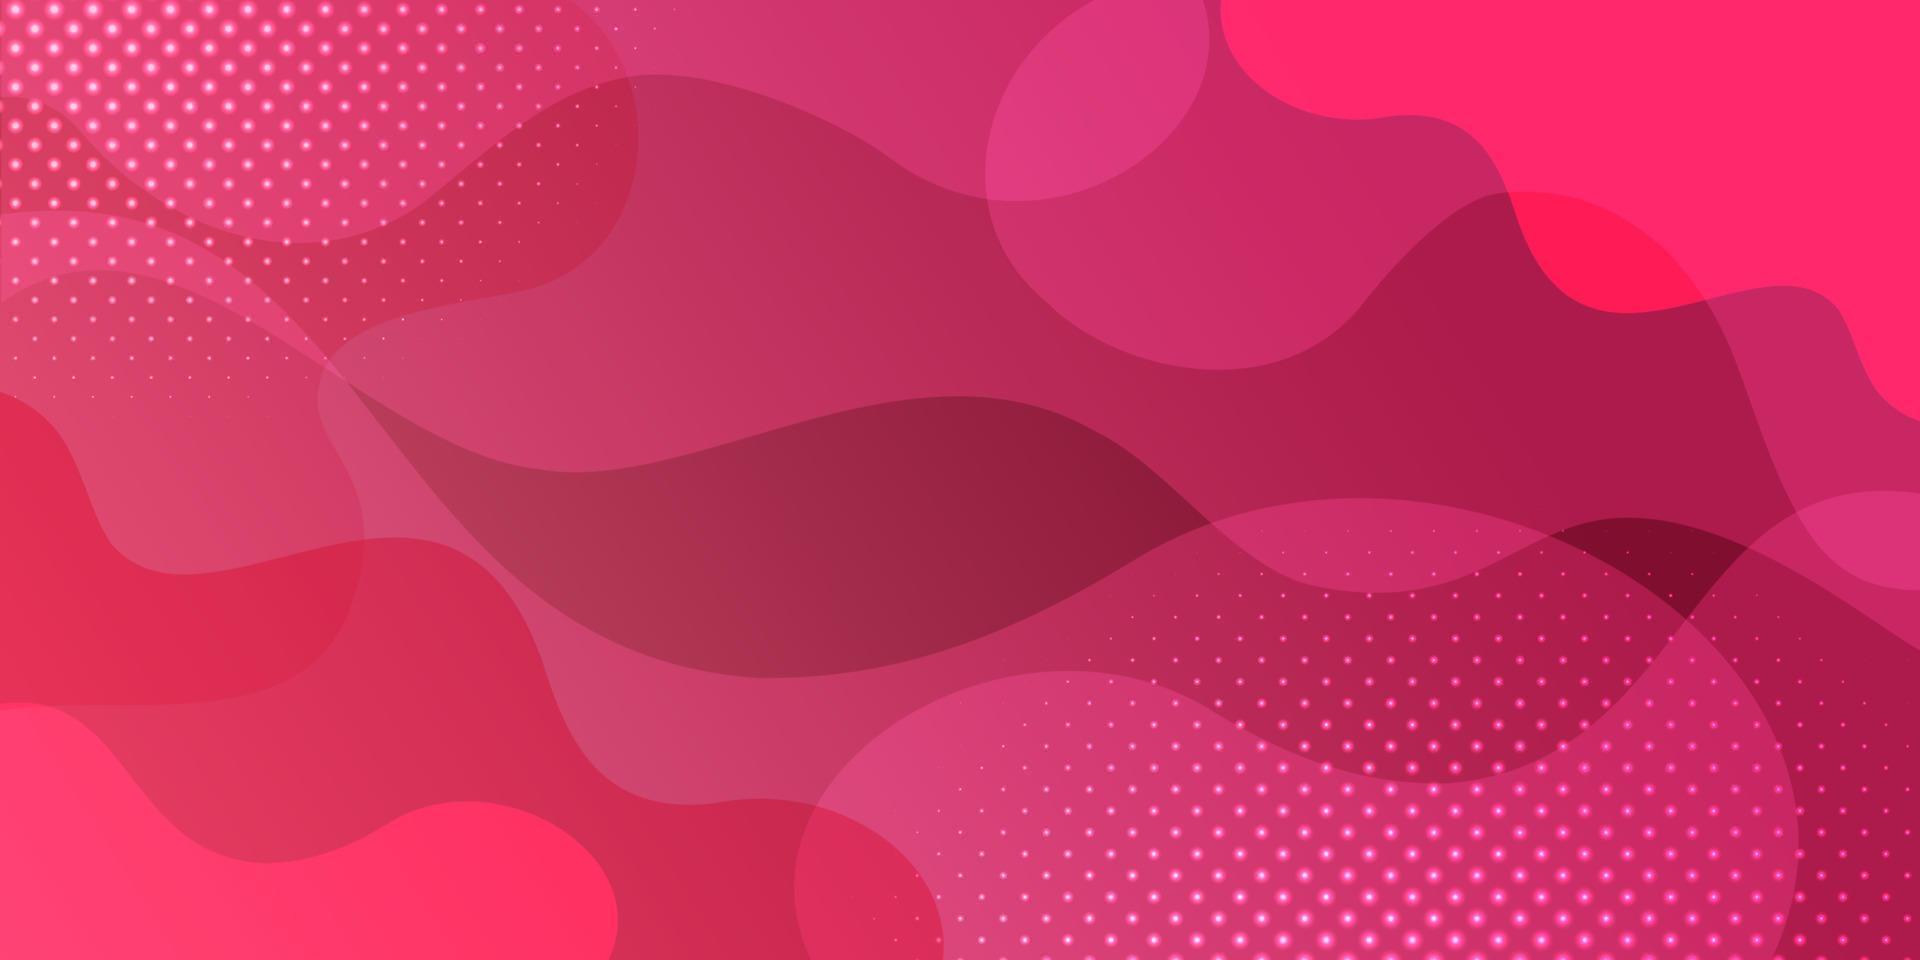 abstrakt flytande rosa med prickiga vektor